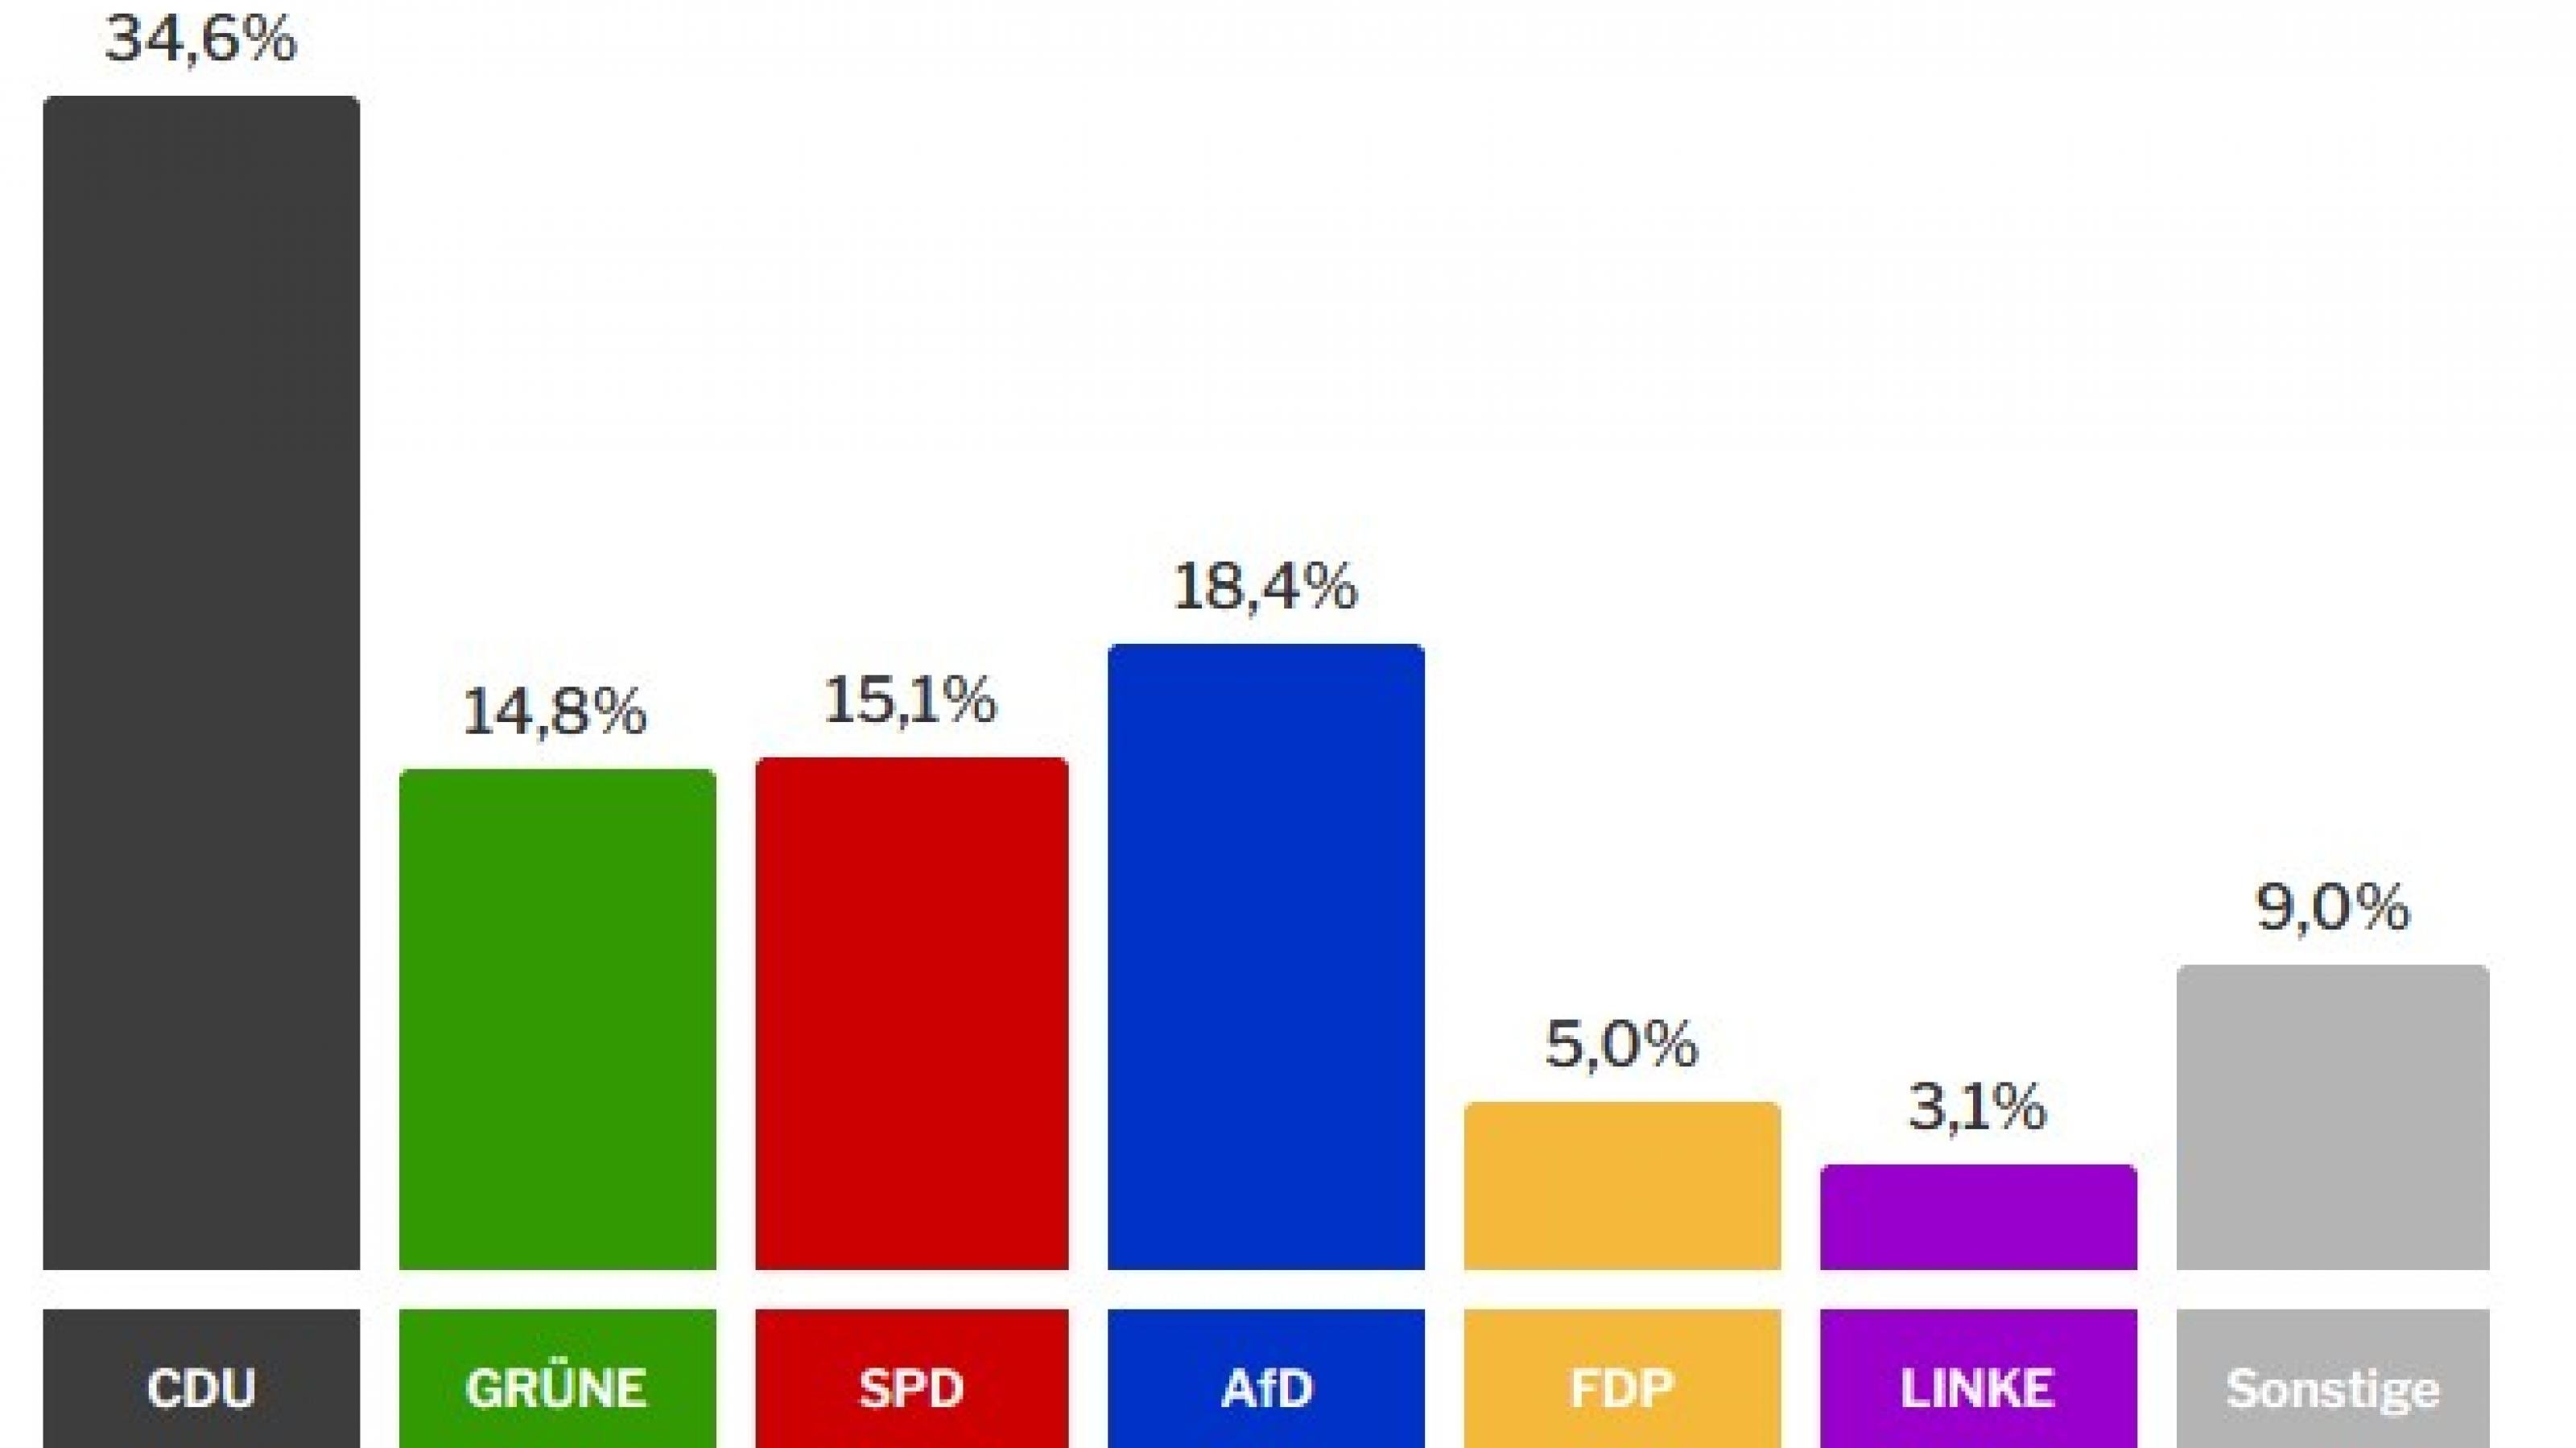 Die Balken zeigen das vorläufige Ergebnis der Landtagswahl in Hessen: CDU: 34,6 %, Grüne: 14,8 %, SPD: 15,1 %, AfD: 18,4 %, FDP: 5 %, Linke: 3,1 %